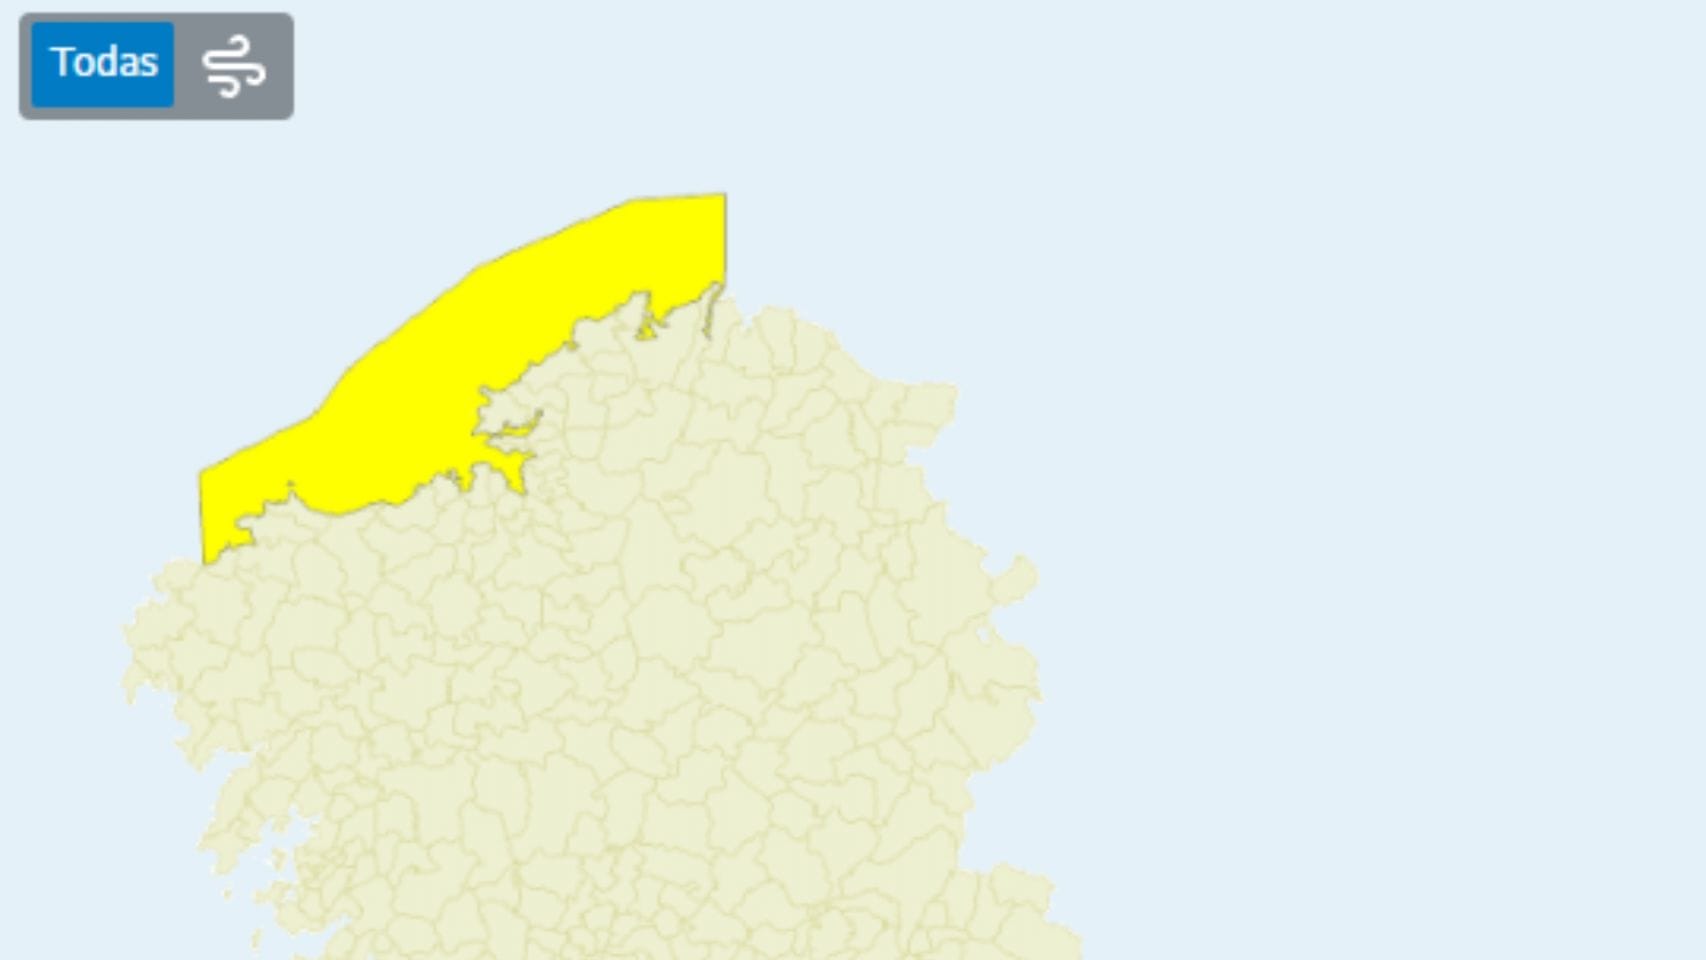 Alerta amarilla en la costa de A Coruña